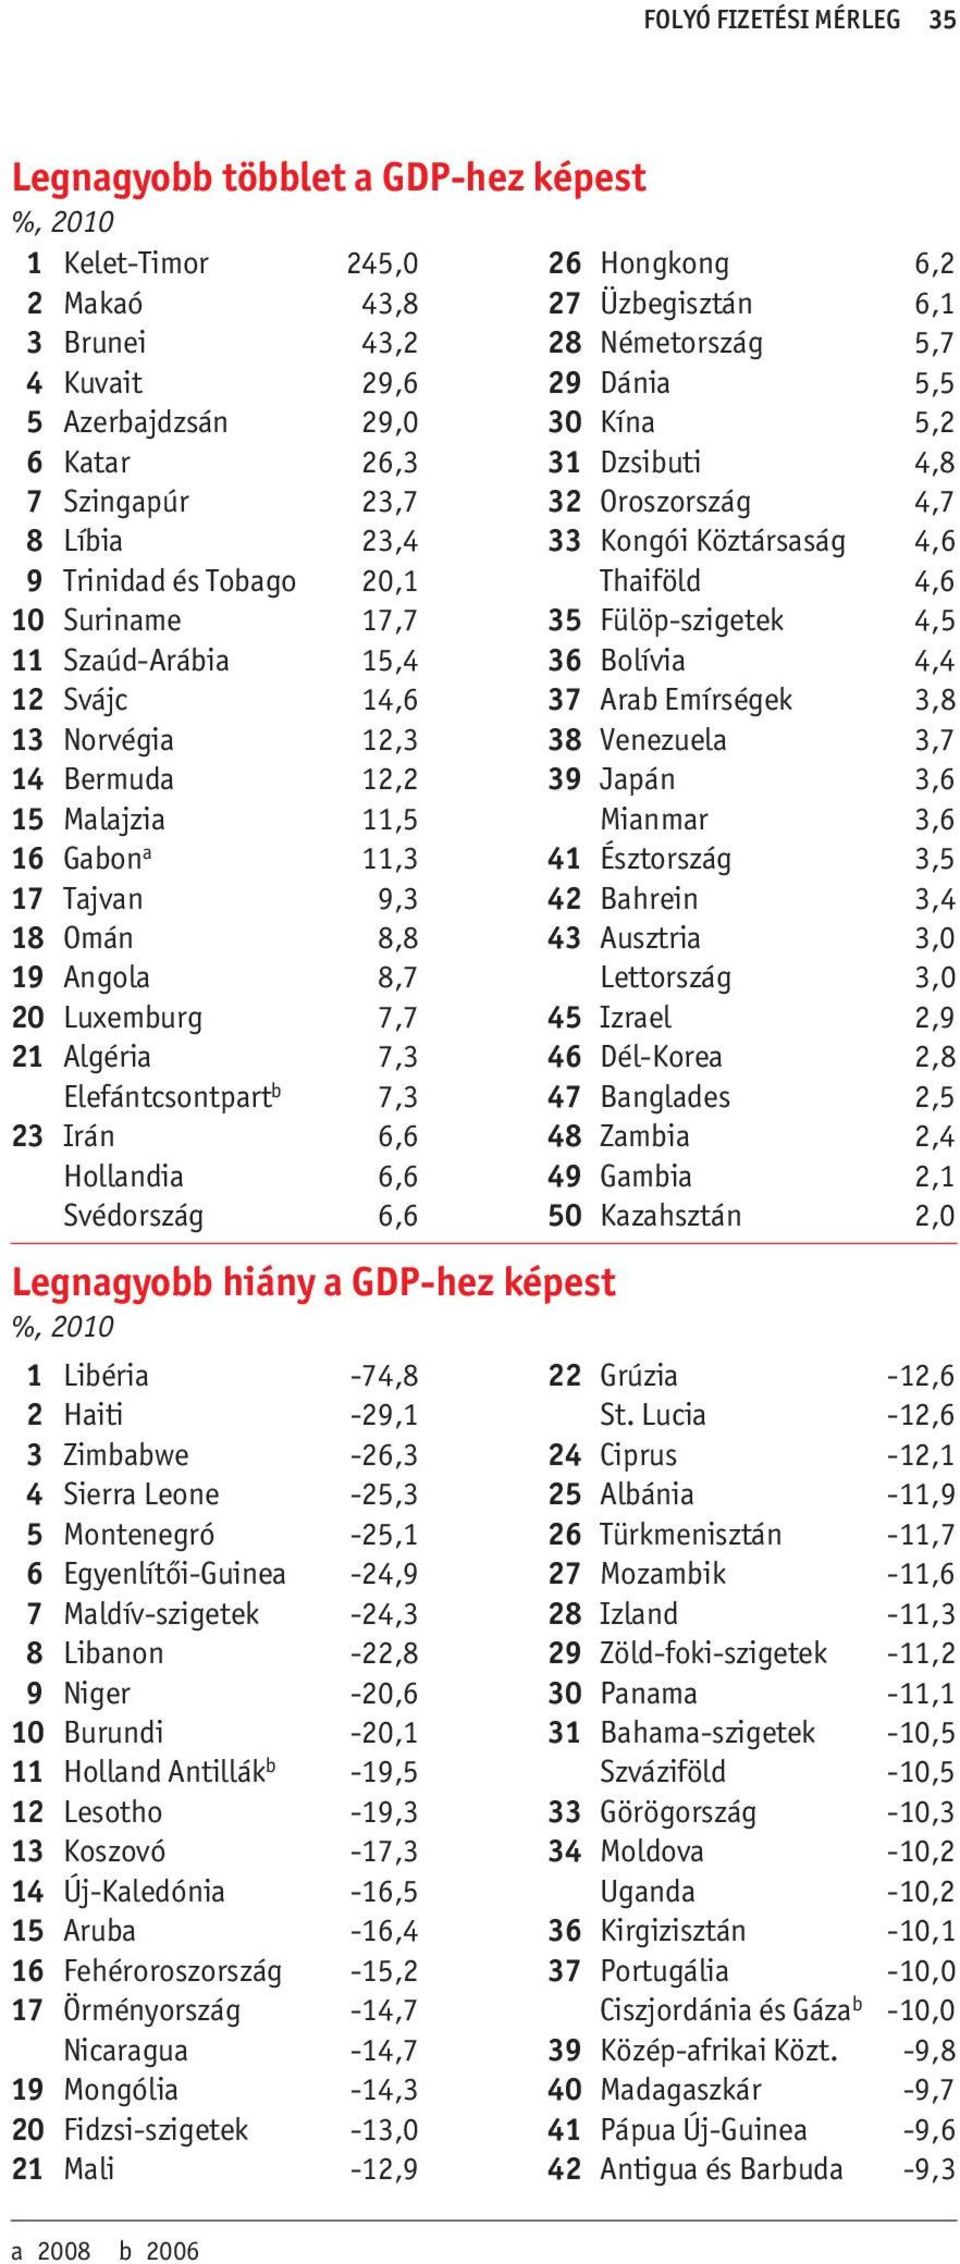 21 Algéria 7,3 Elefántcsontpart b 7,3 23 Irán 6,6 Hollandia 6,6 Svédország 6,6 Legnagyobb hiány a GDP-hez képest %, 2010 1 Libéria -74,8 2 Haiti -29,1 3 Zimbabwe -26,3 4 Sierra Leone -25,3 5